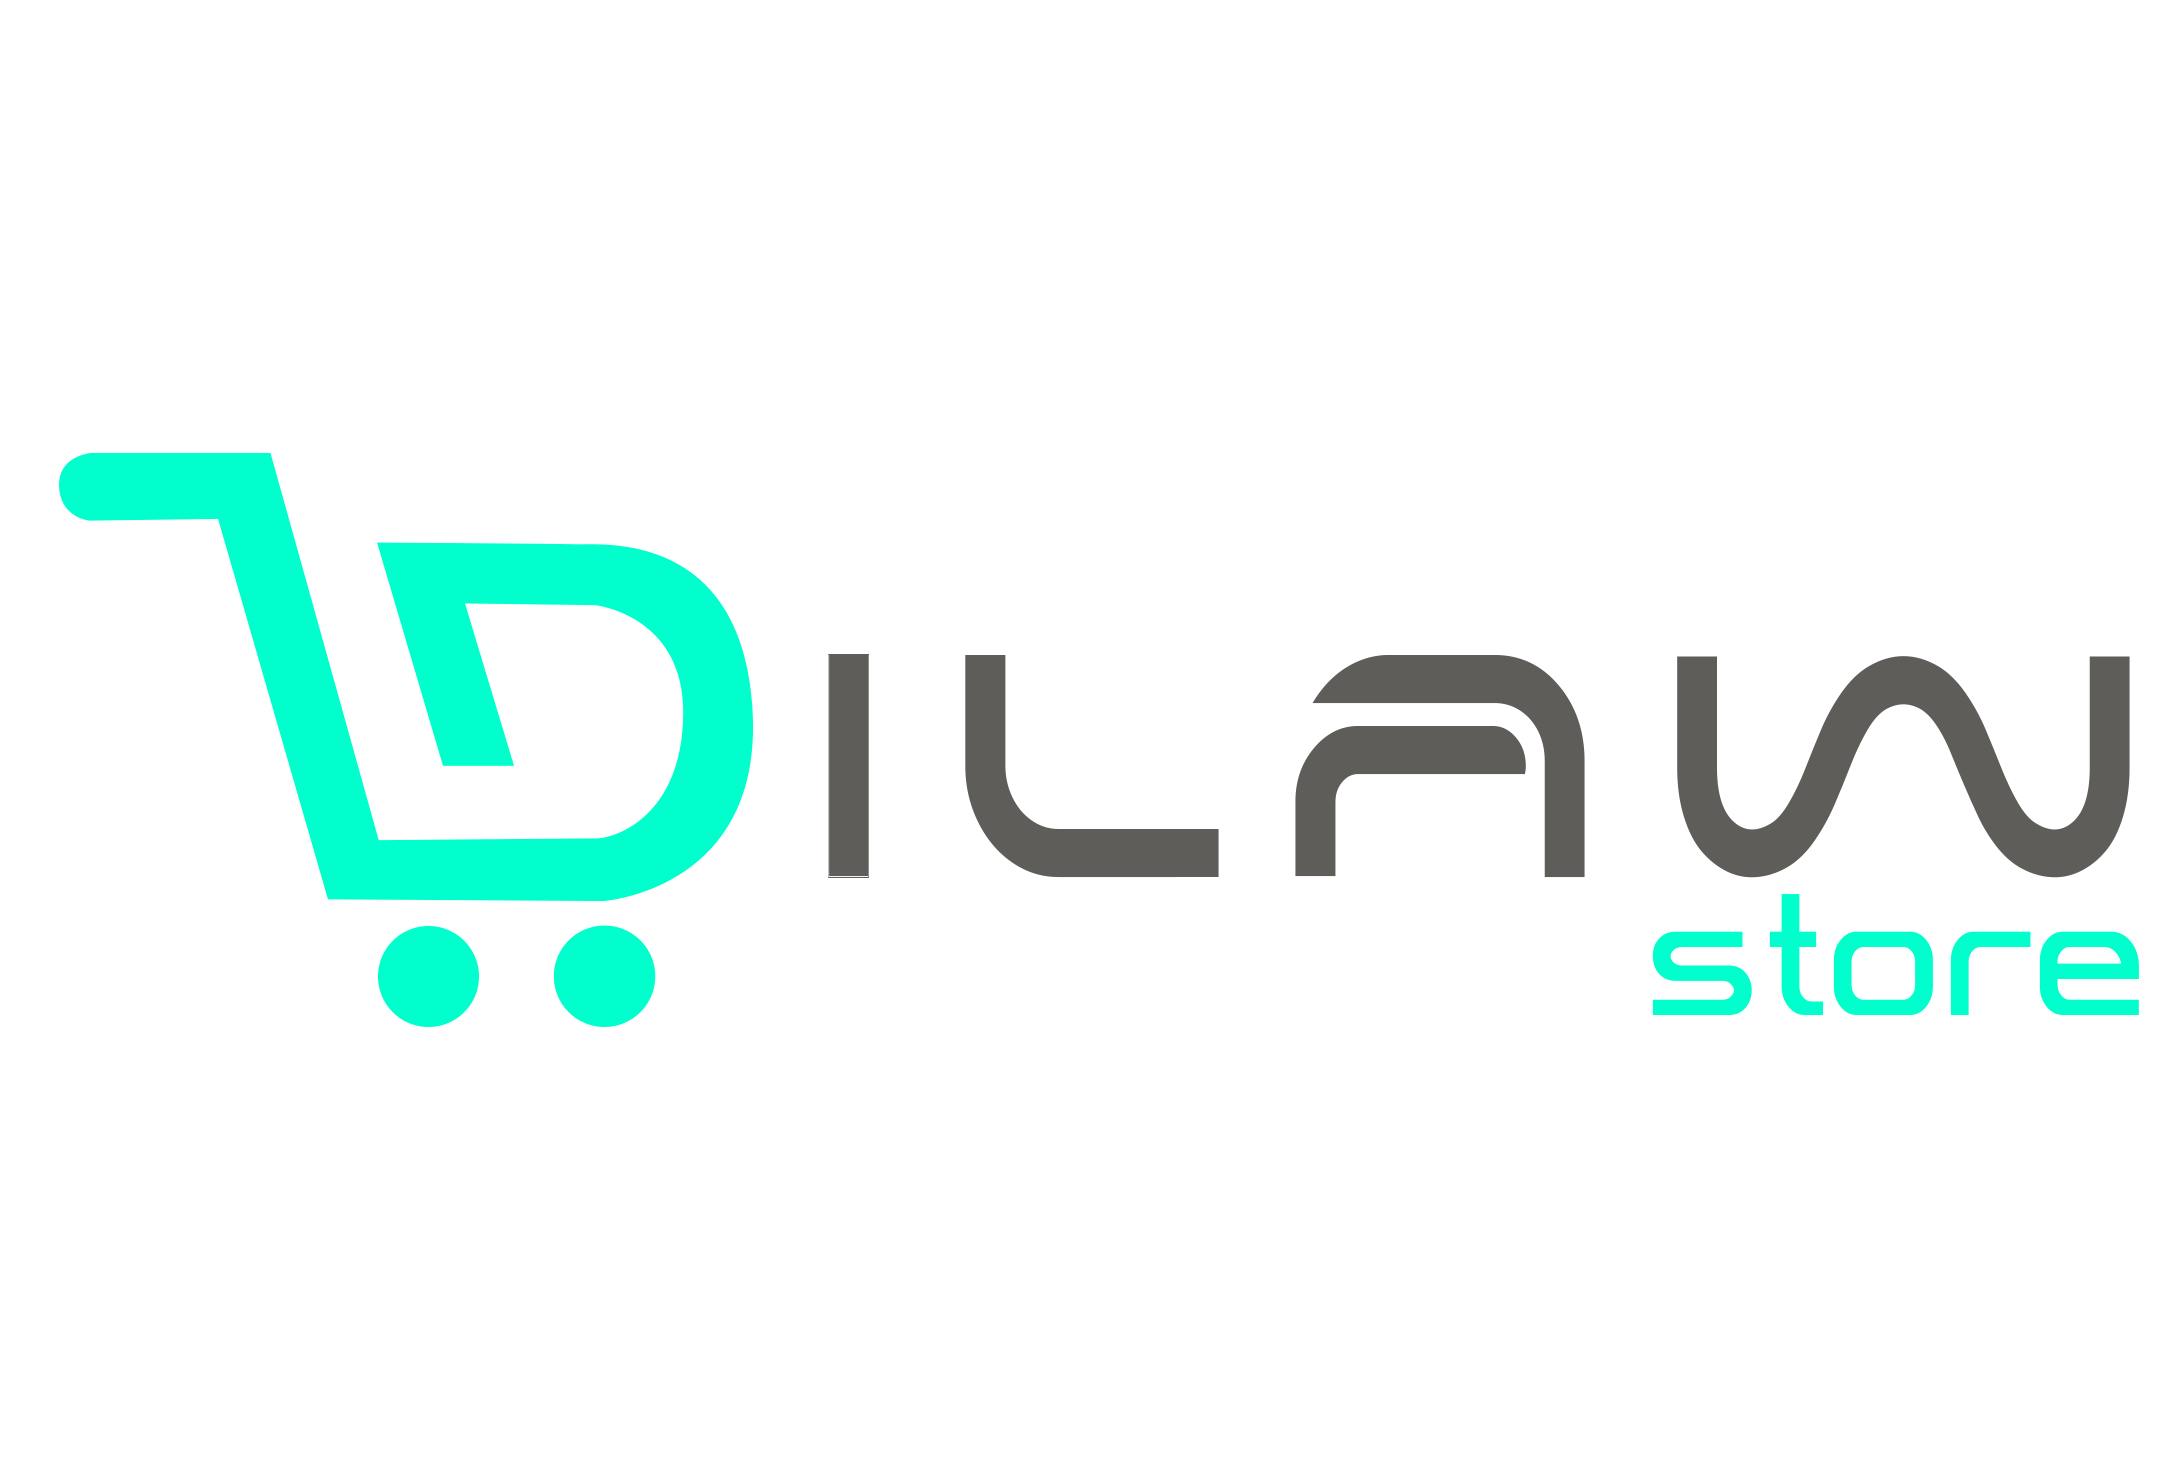 DilawStore